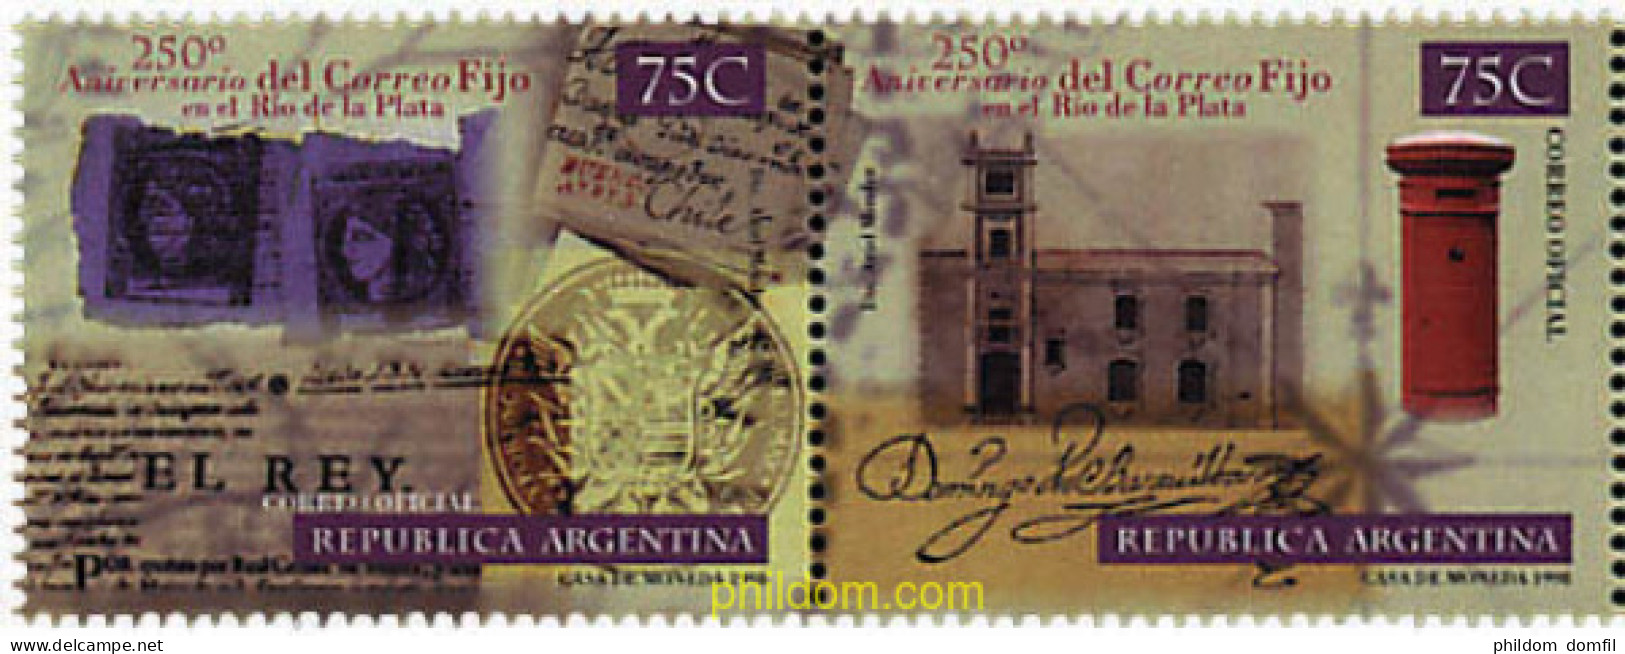 6940 MNH ARGENTINA 1998 250 ANIVERSARIO DEL "CORREO FIJO" EN RIO DE LA PLATA - Unused Stamps